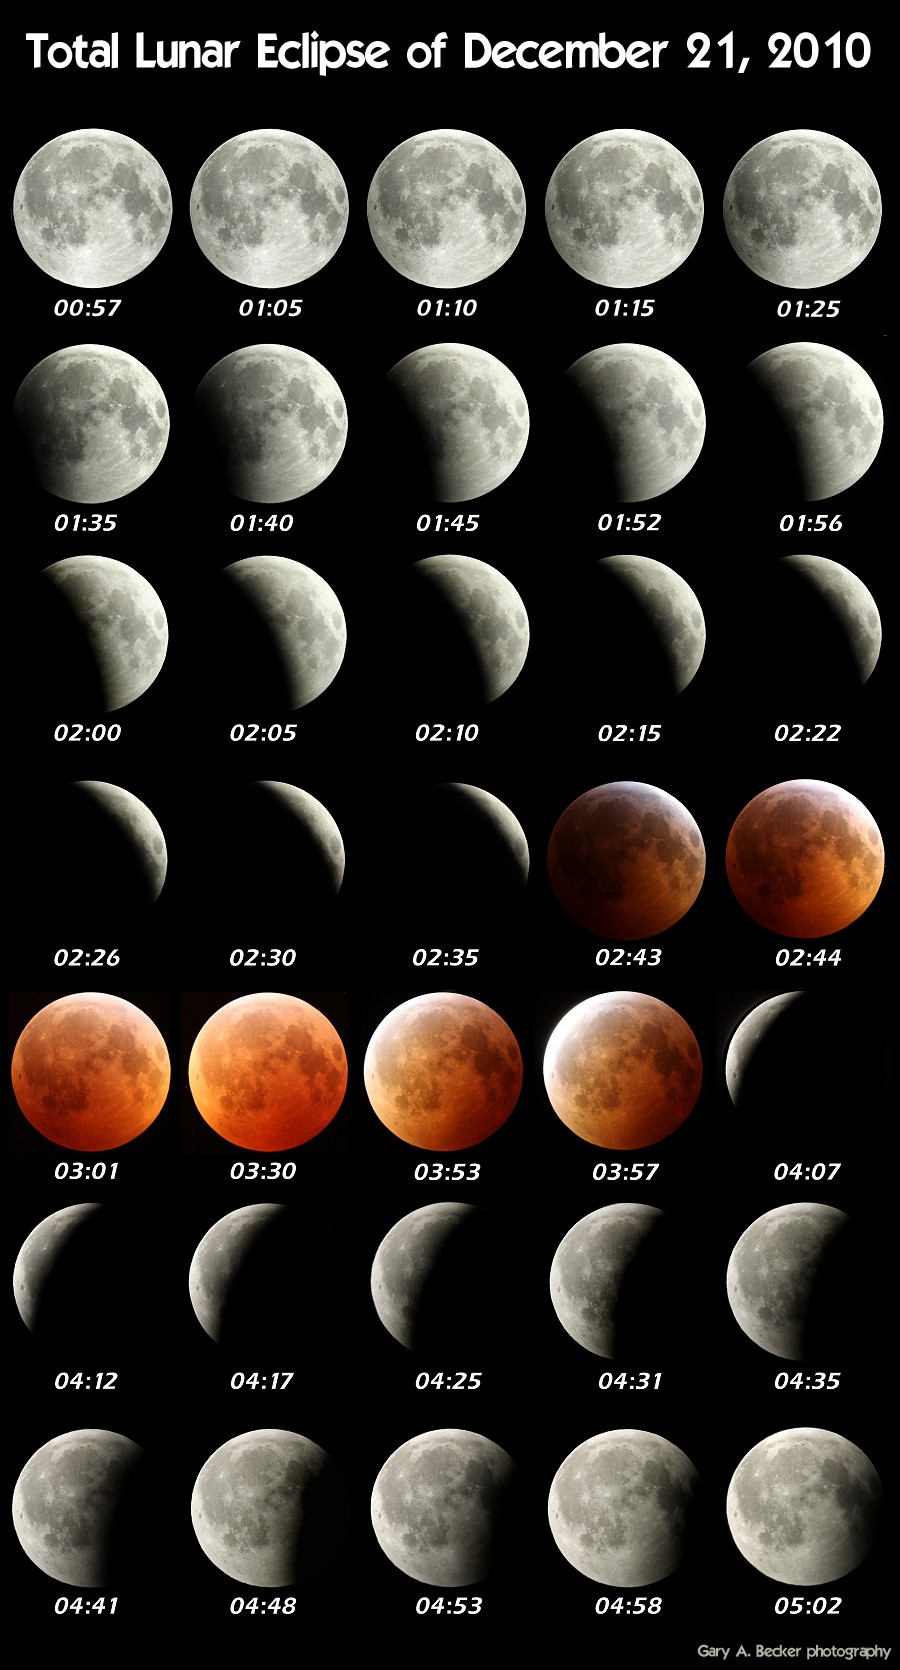 [December 21, 2010 Total Lunar Eclipse]